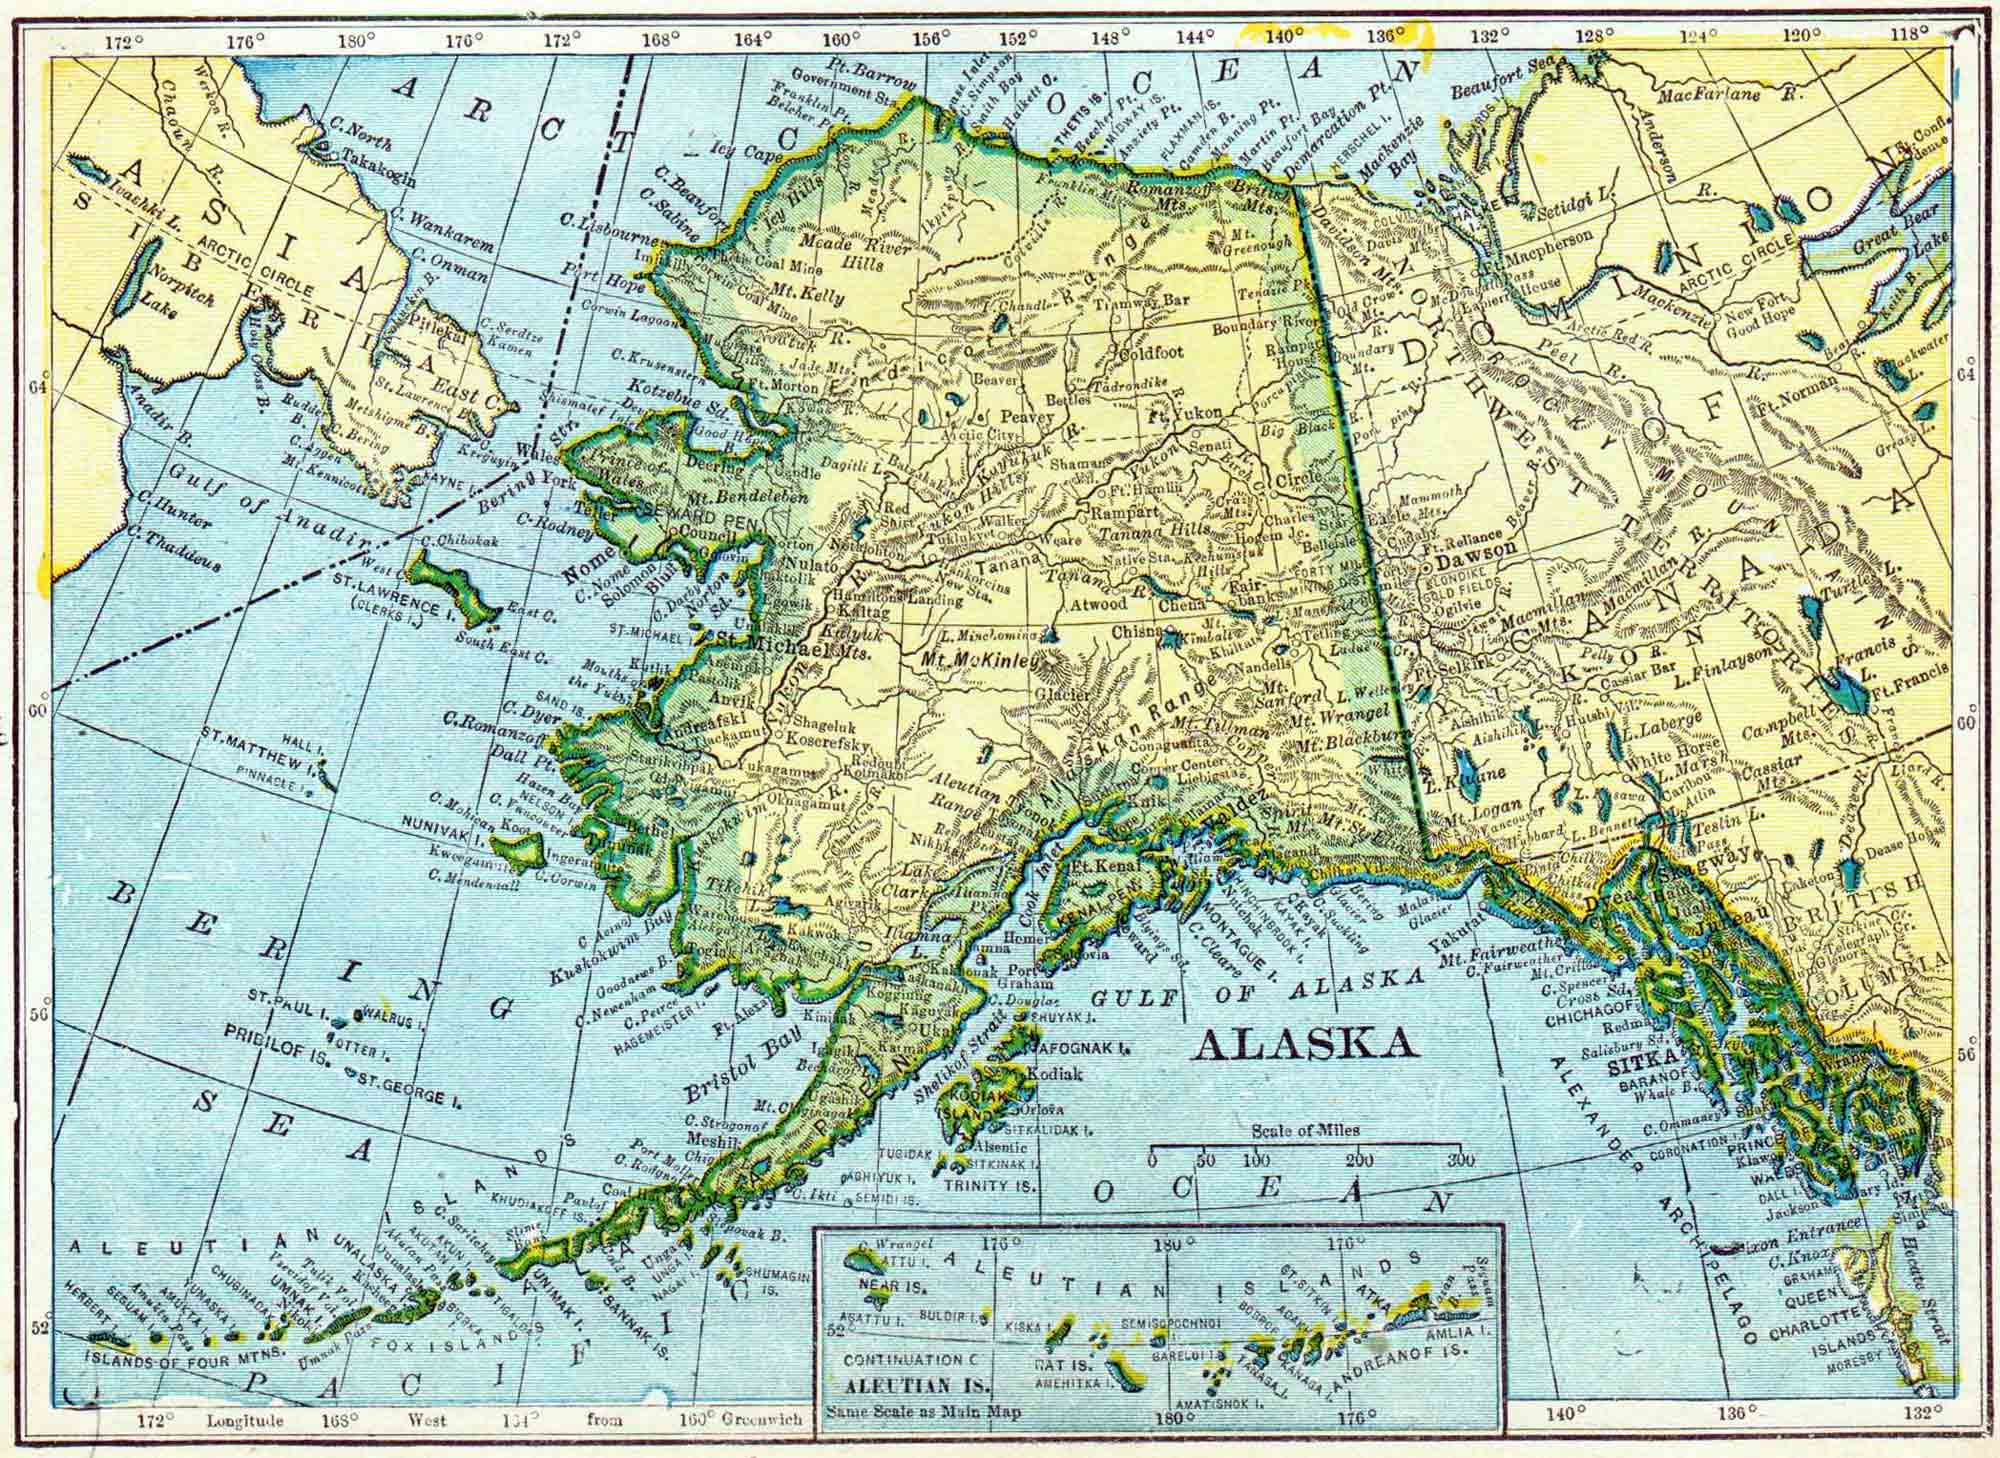 1910 Alaska Census Map